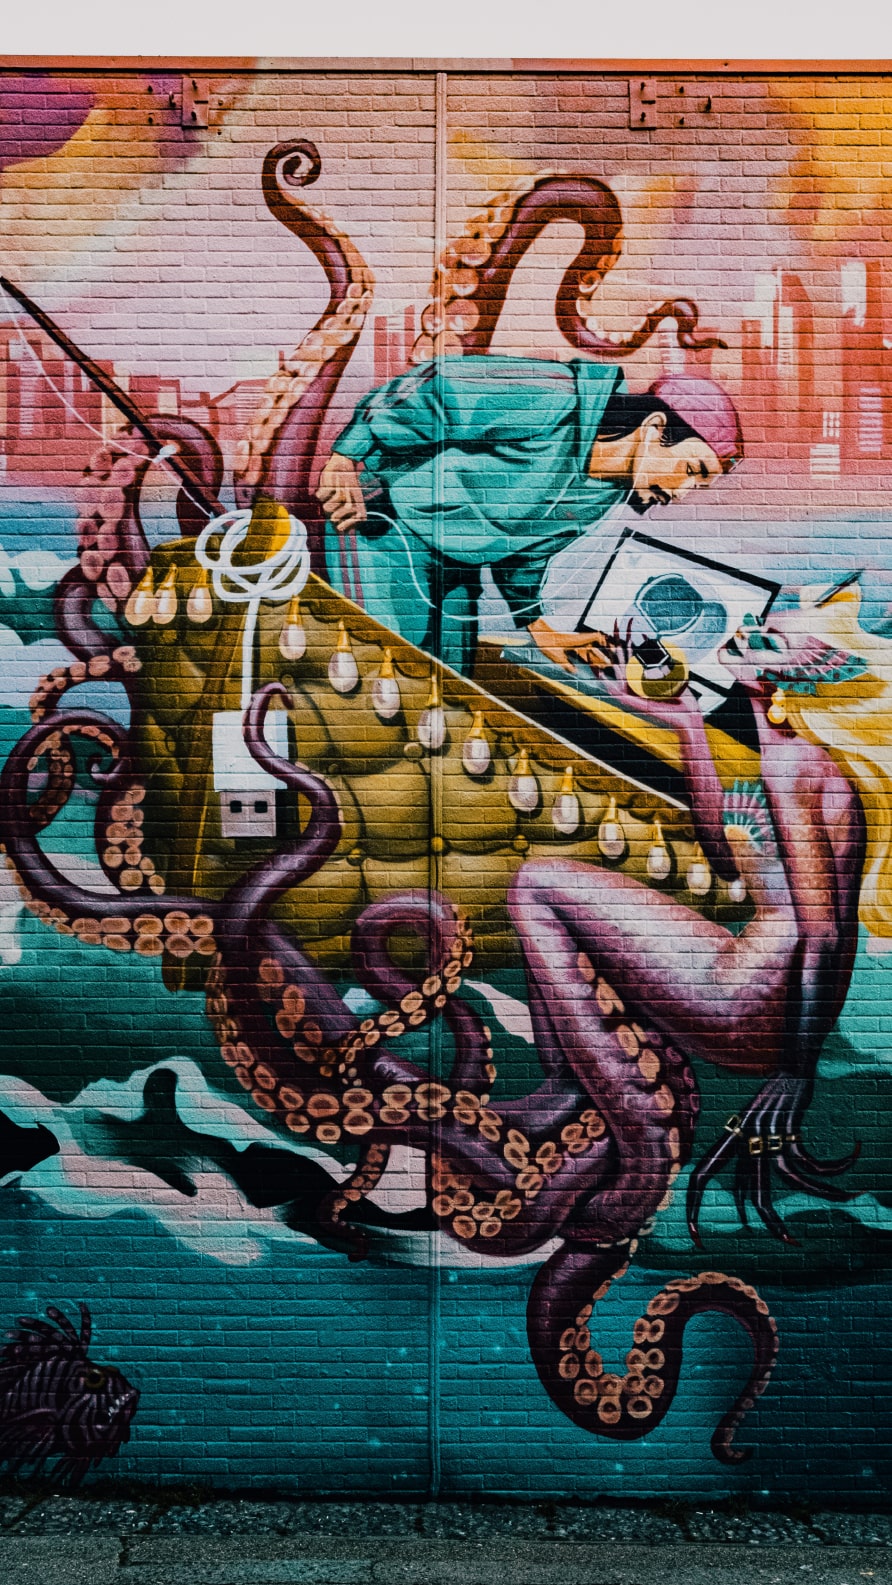 Iphone fondos de pantalla Graffiti